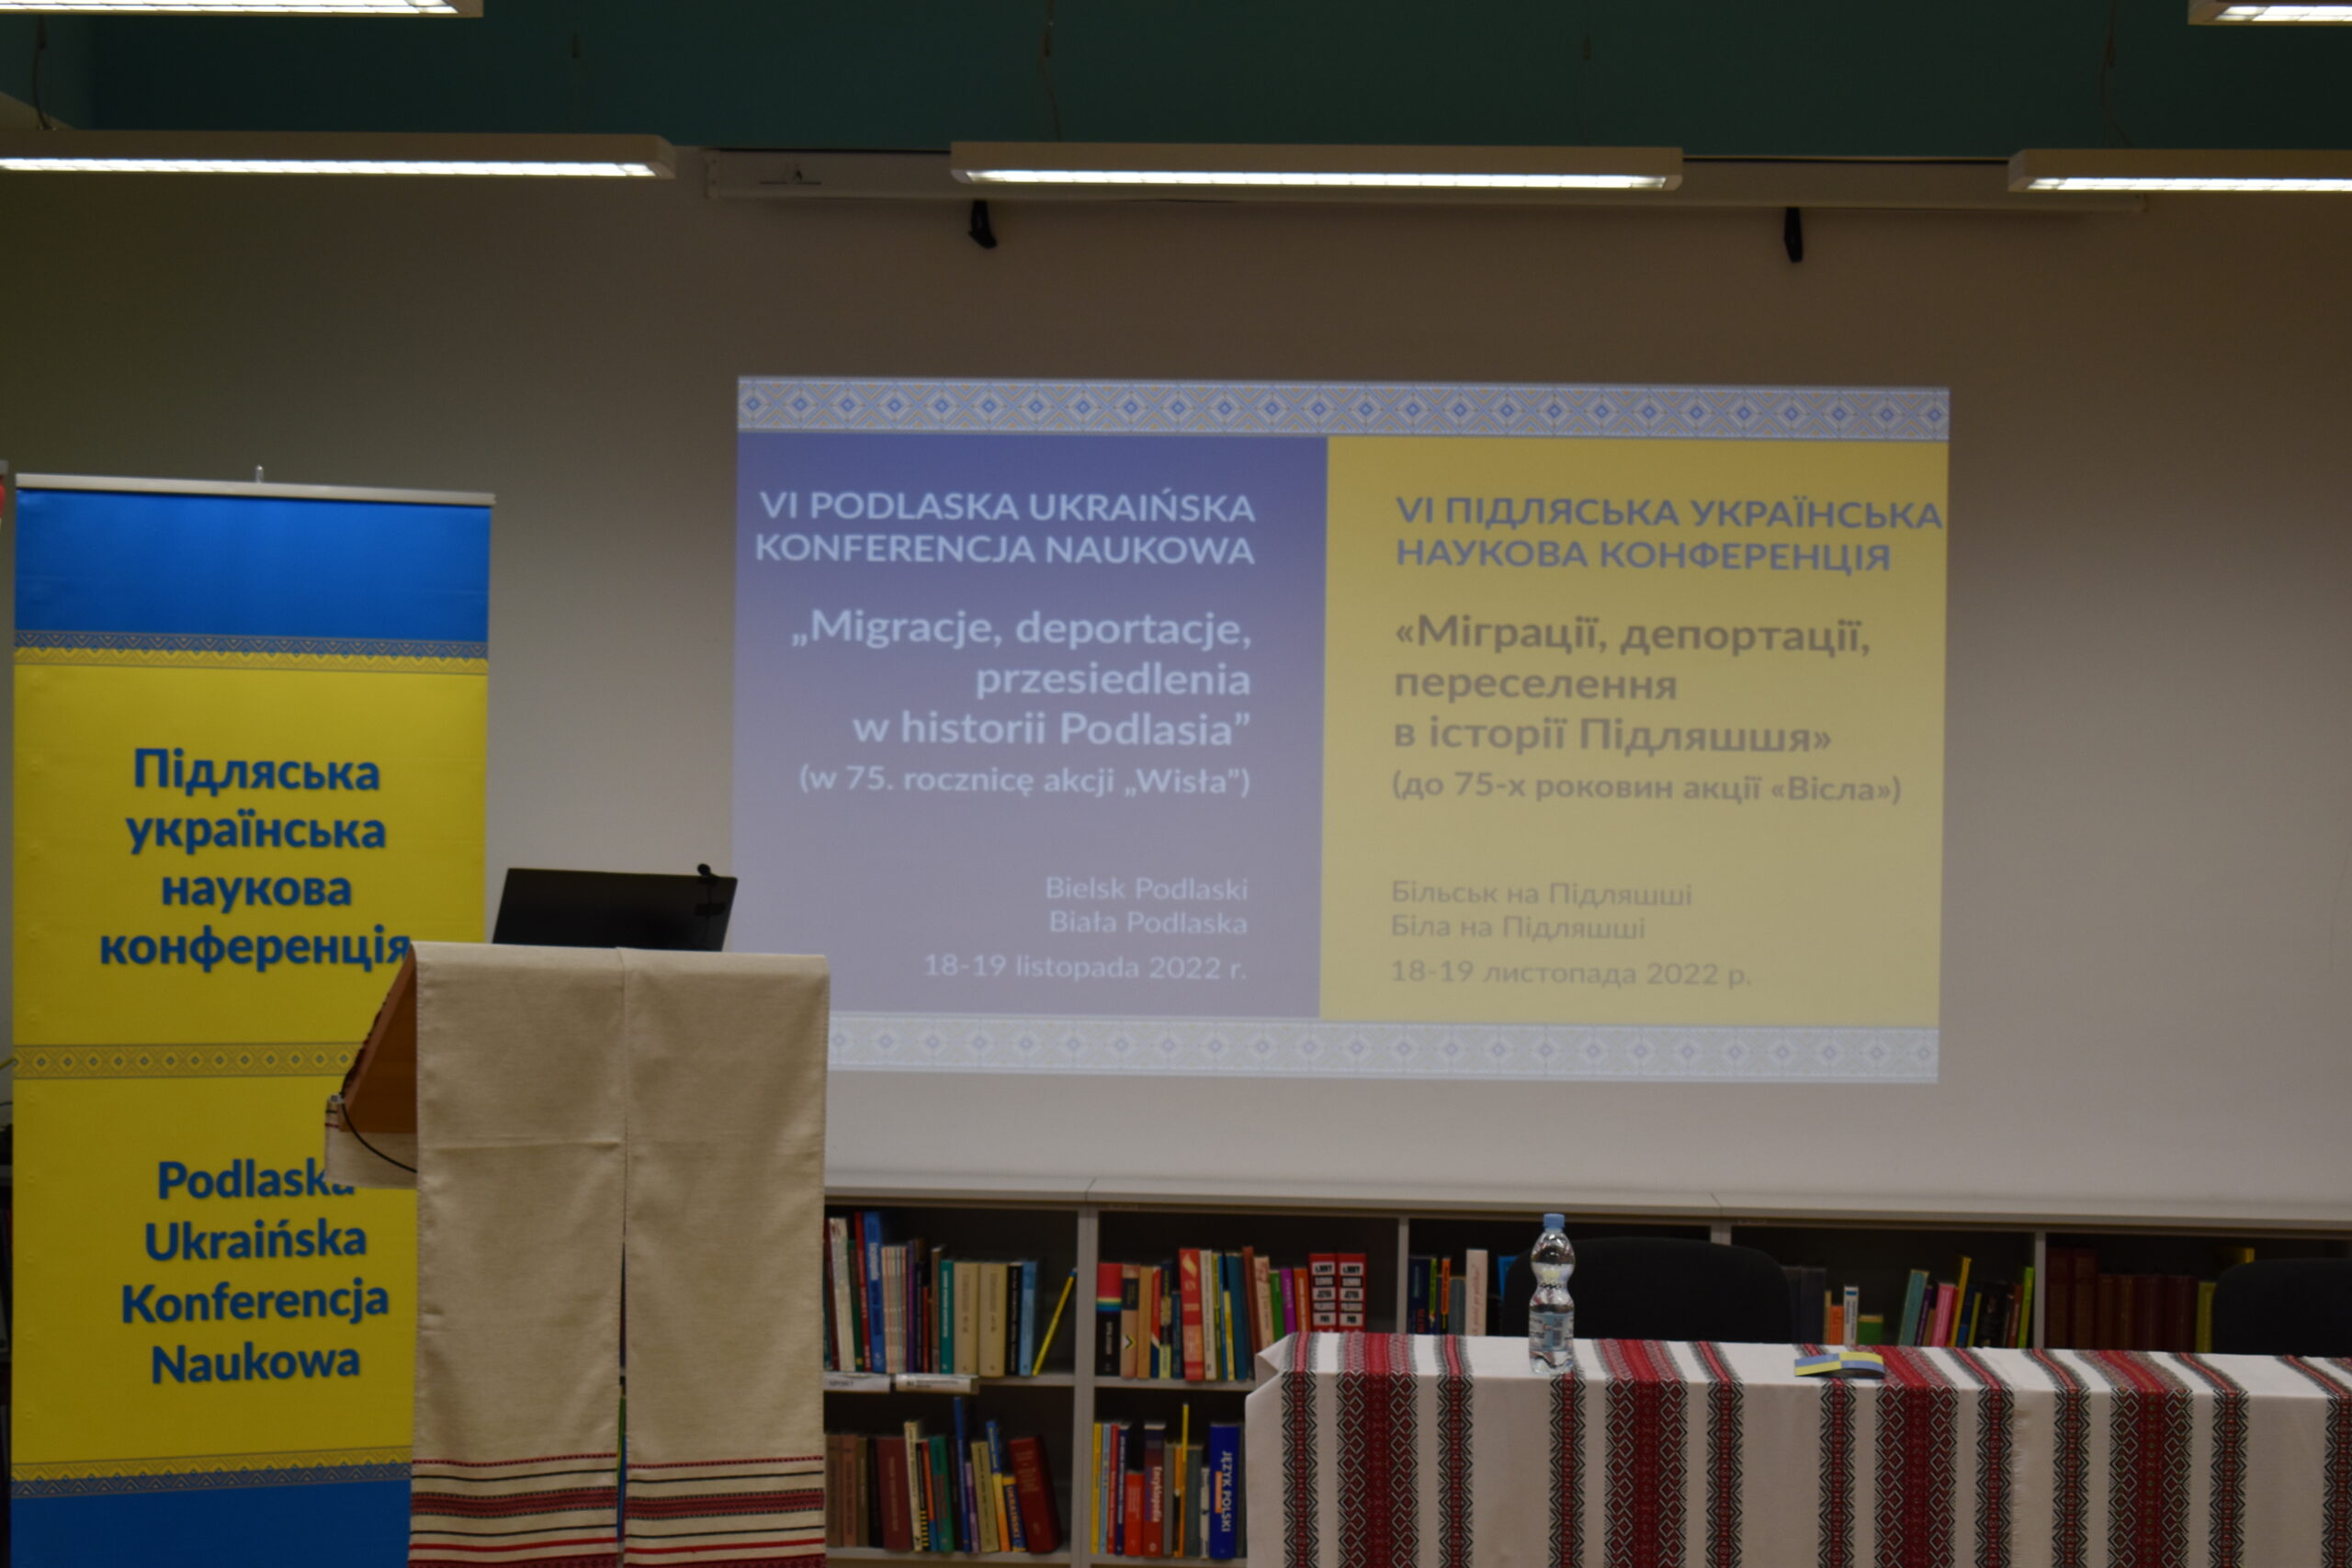 Odbyła się VI Podlaska Ukraińska Konferencja Naukowa